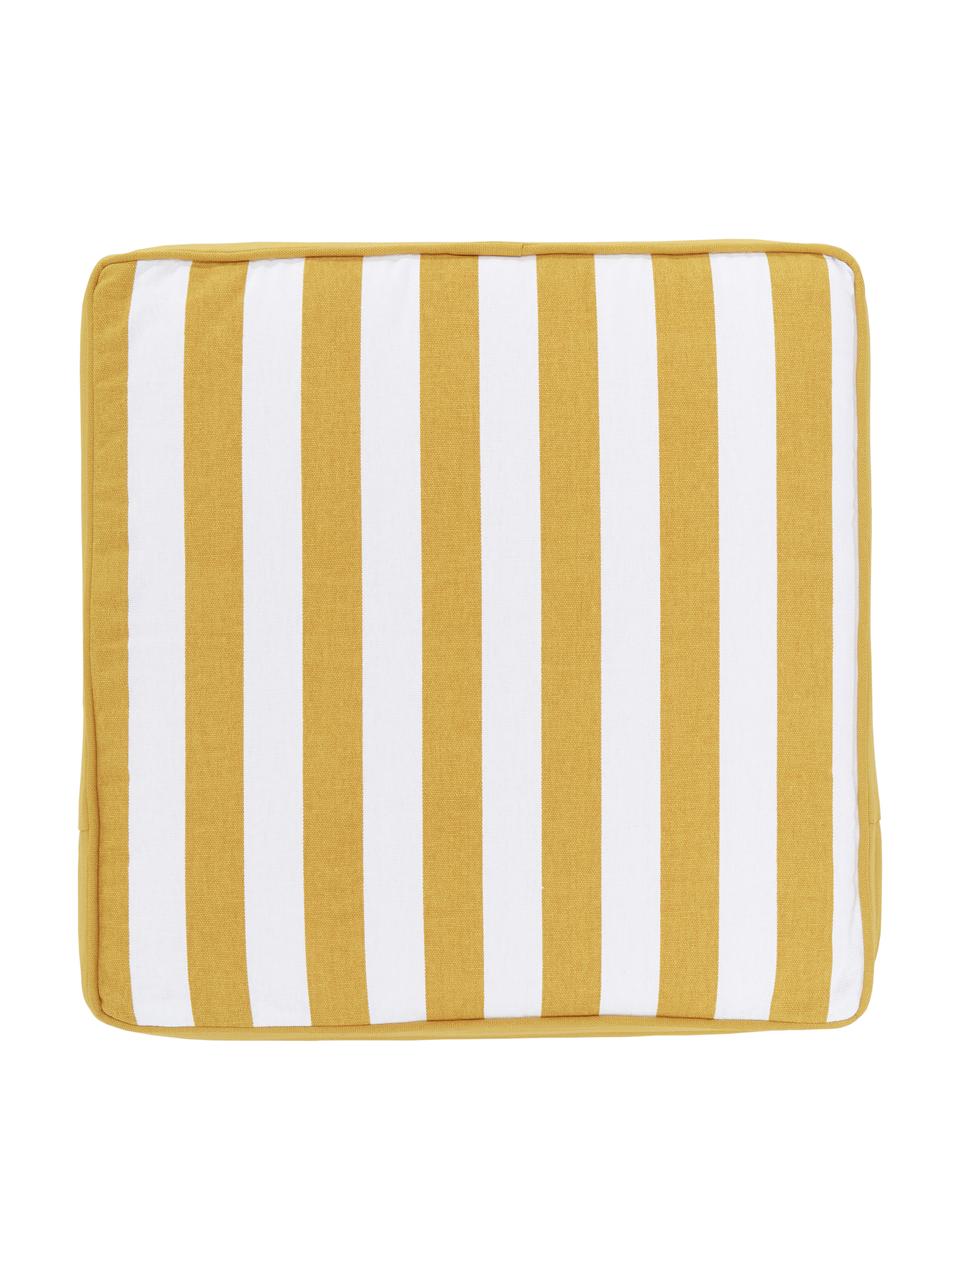 Cuscino sedia alto a righe color giallo/bianco Timon, Rivestimento: 100% cotone, Giallo & bianco, rigato, Larg. 40 x Lung. 40 cm